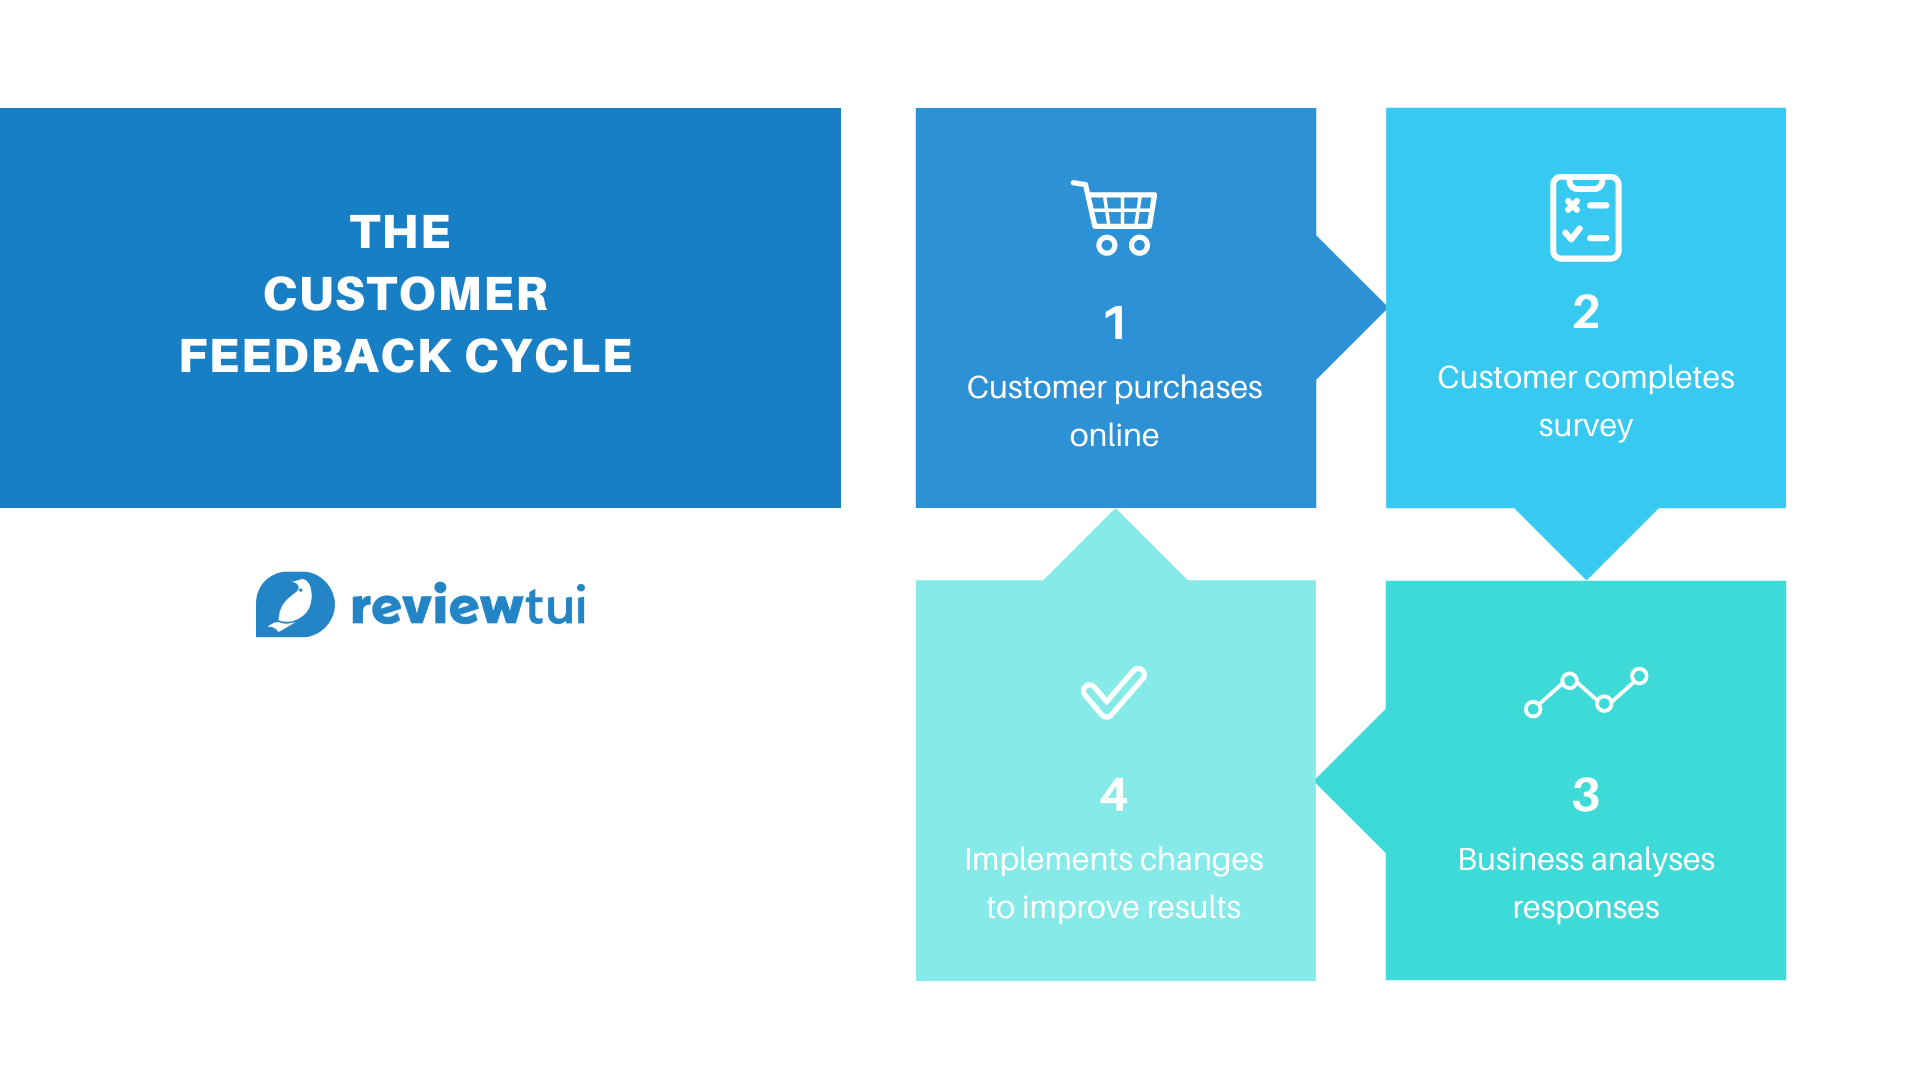 The customer feedback cycle